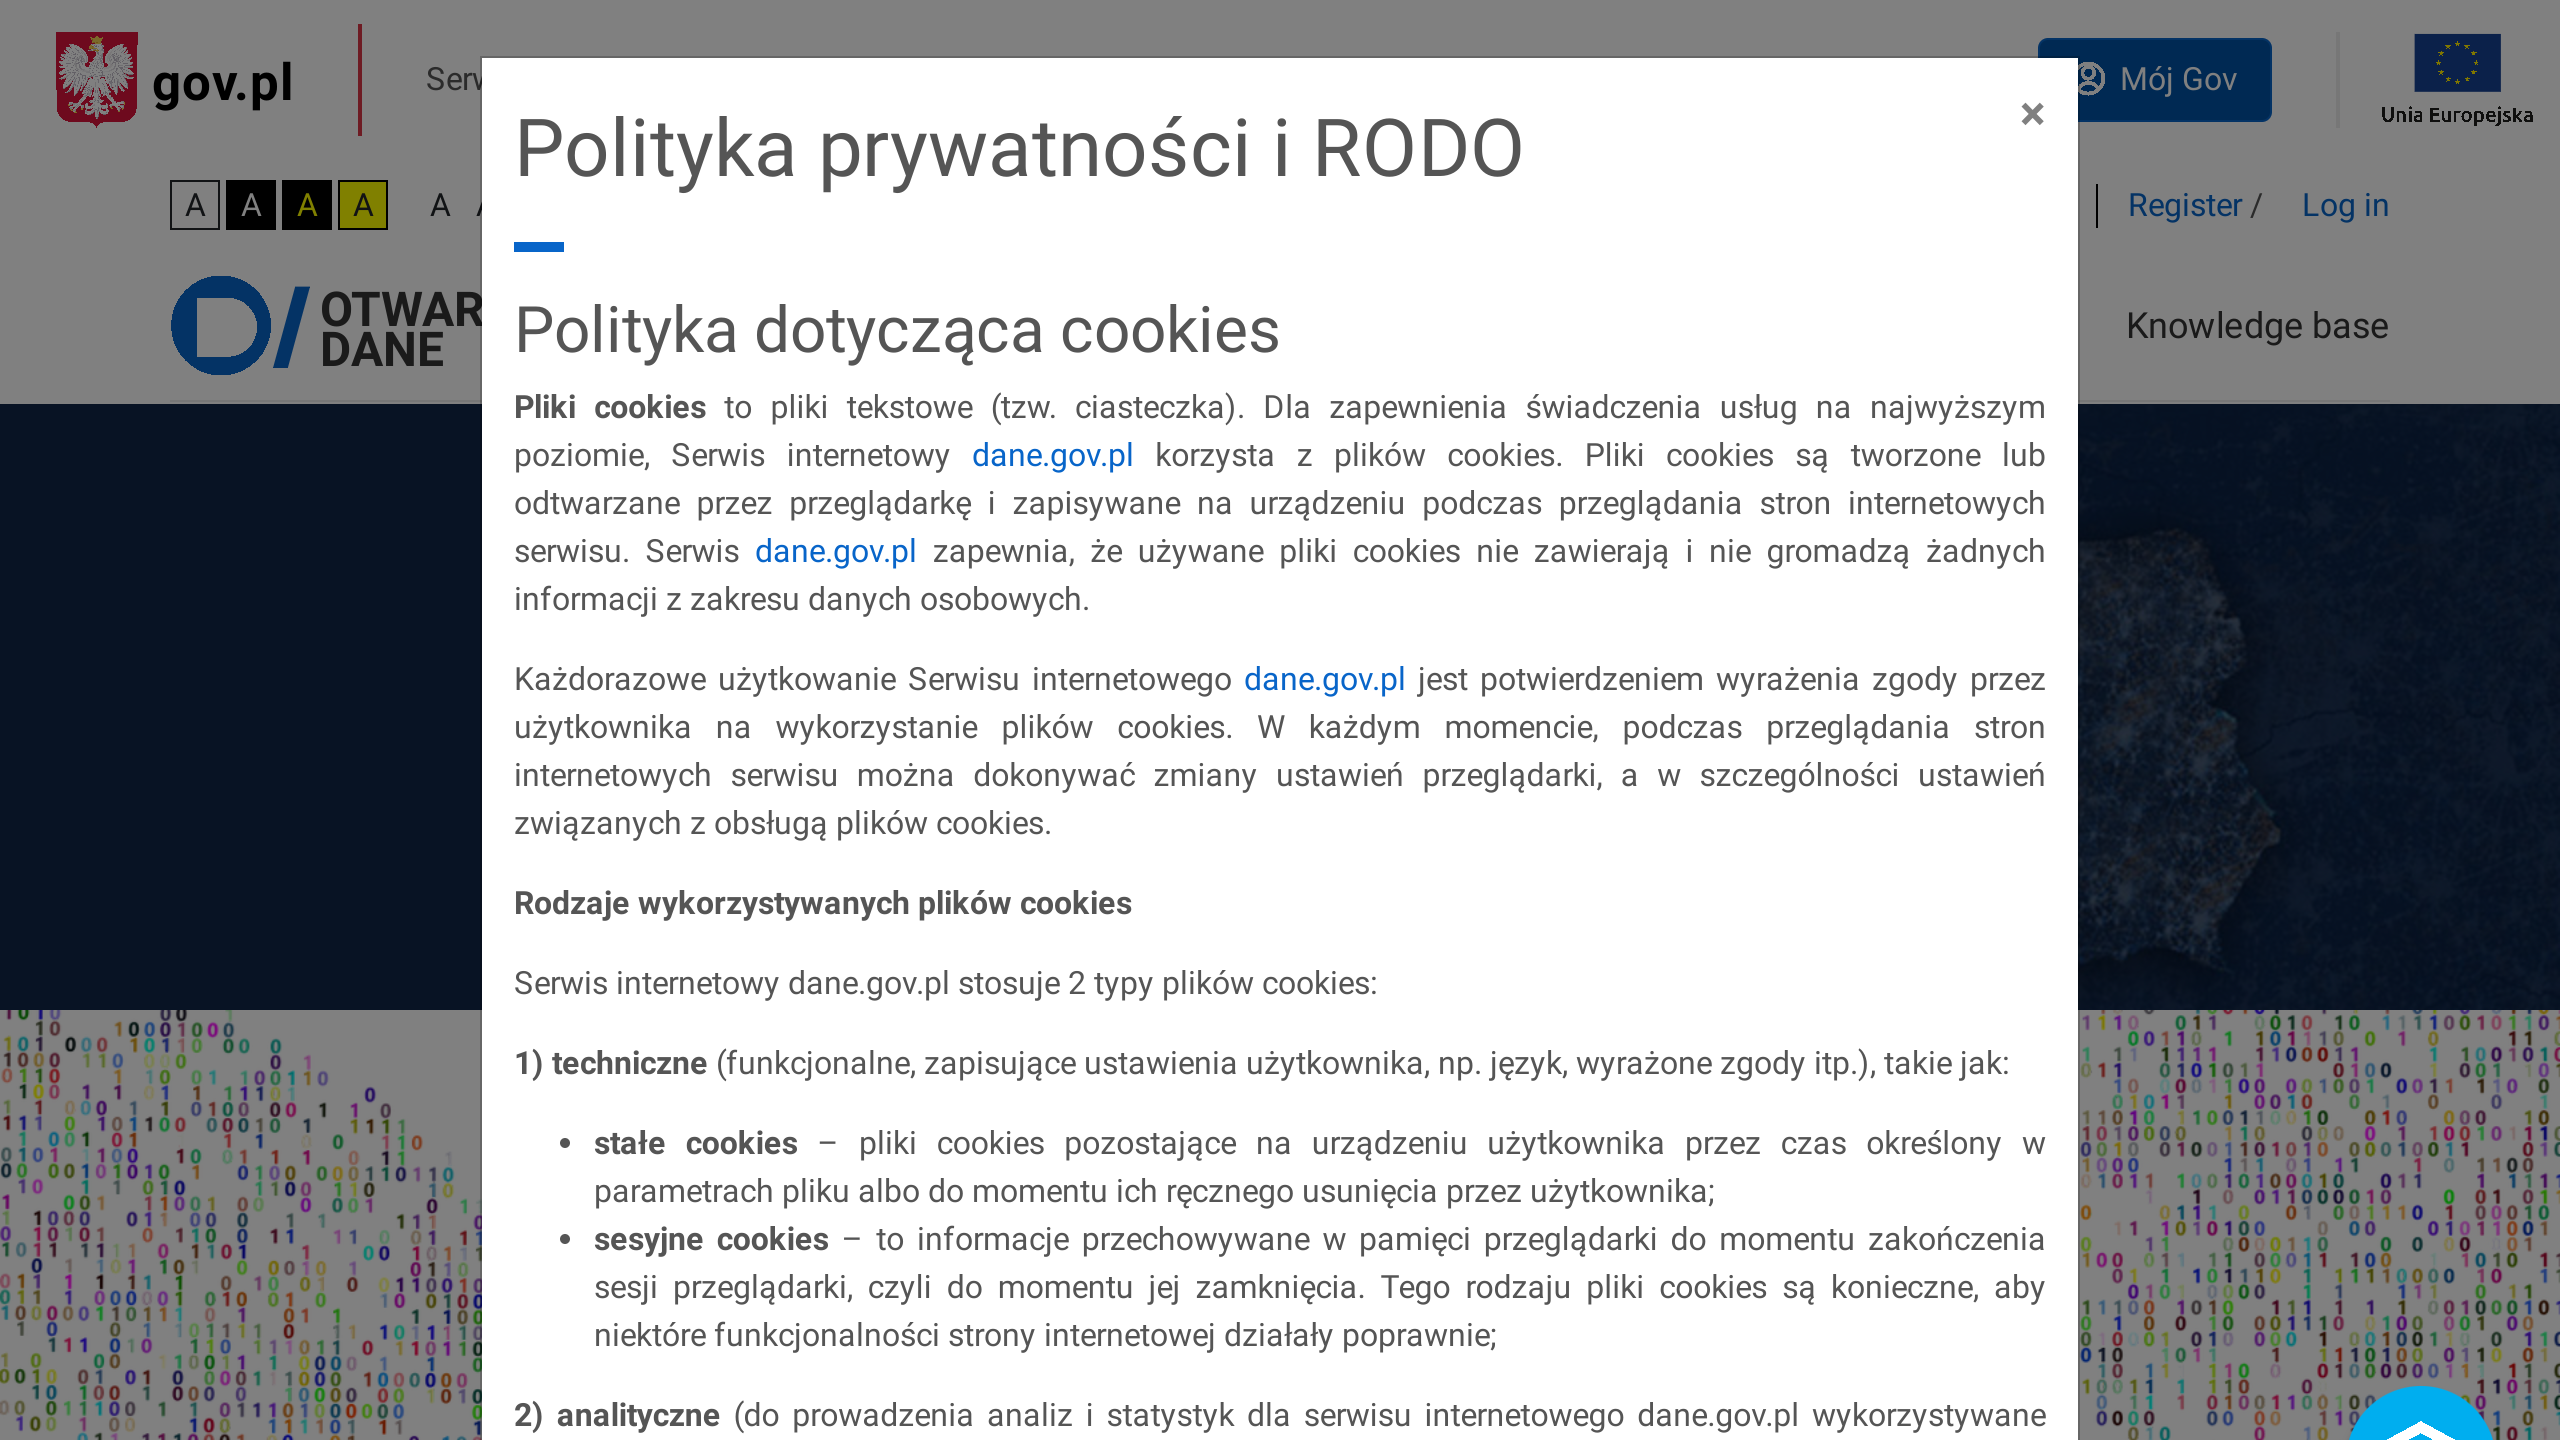 Open Government, Poland's website screenshot